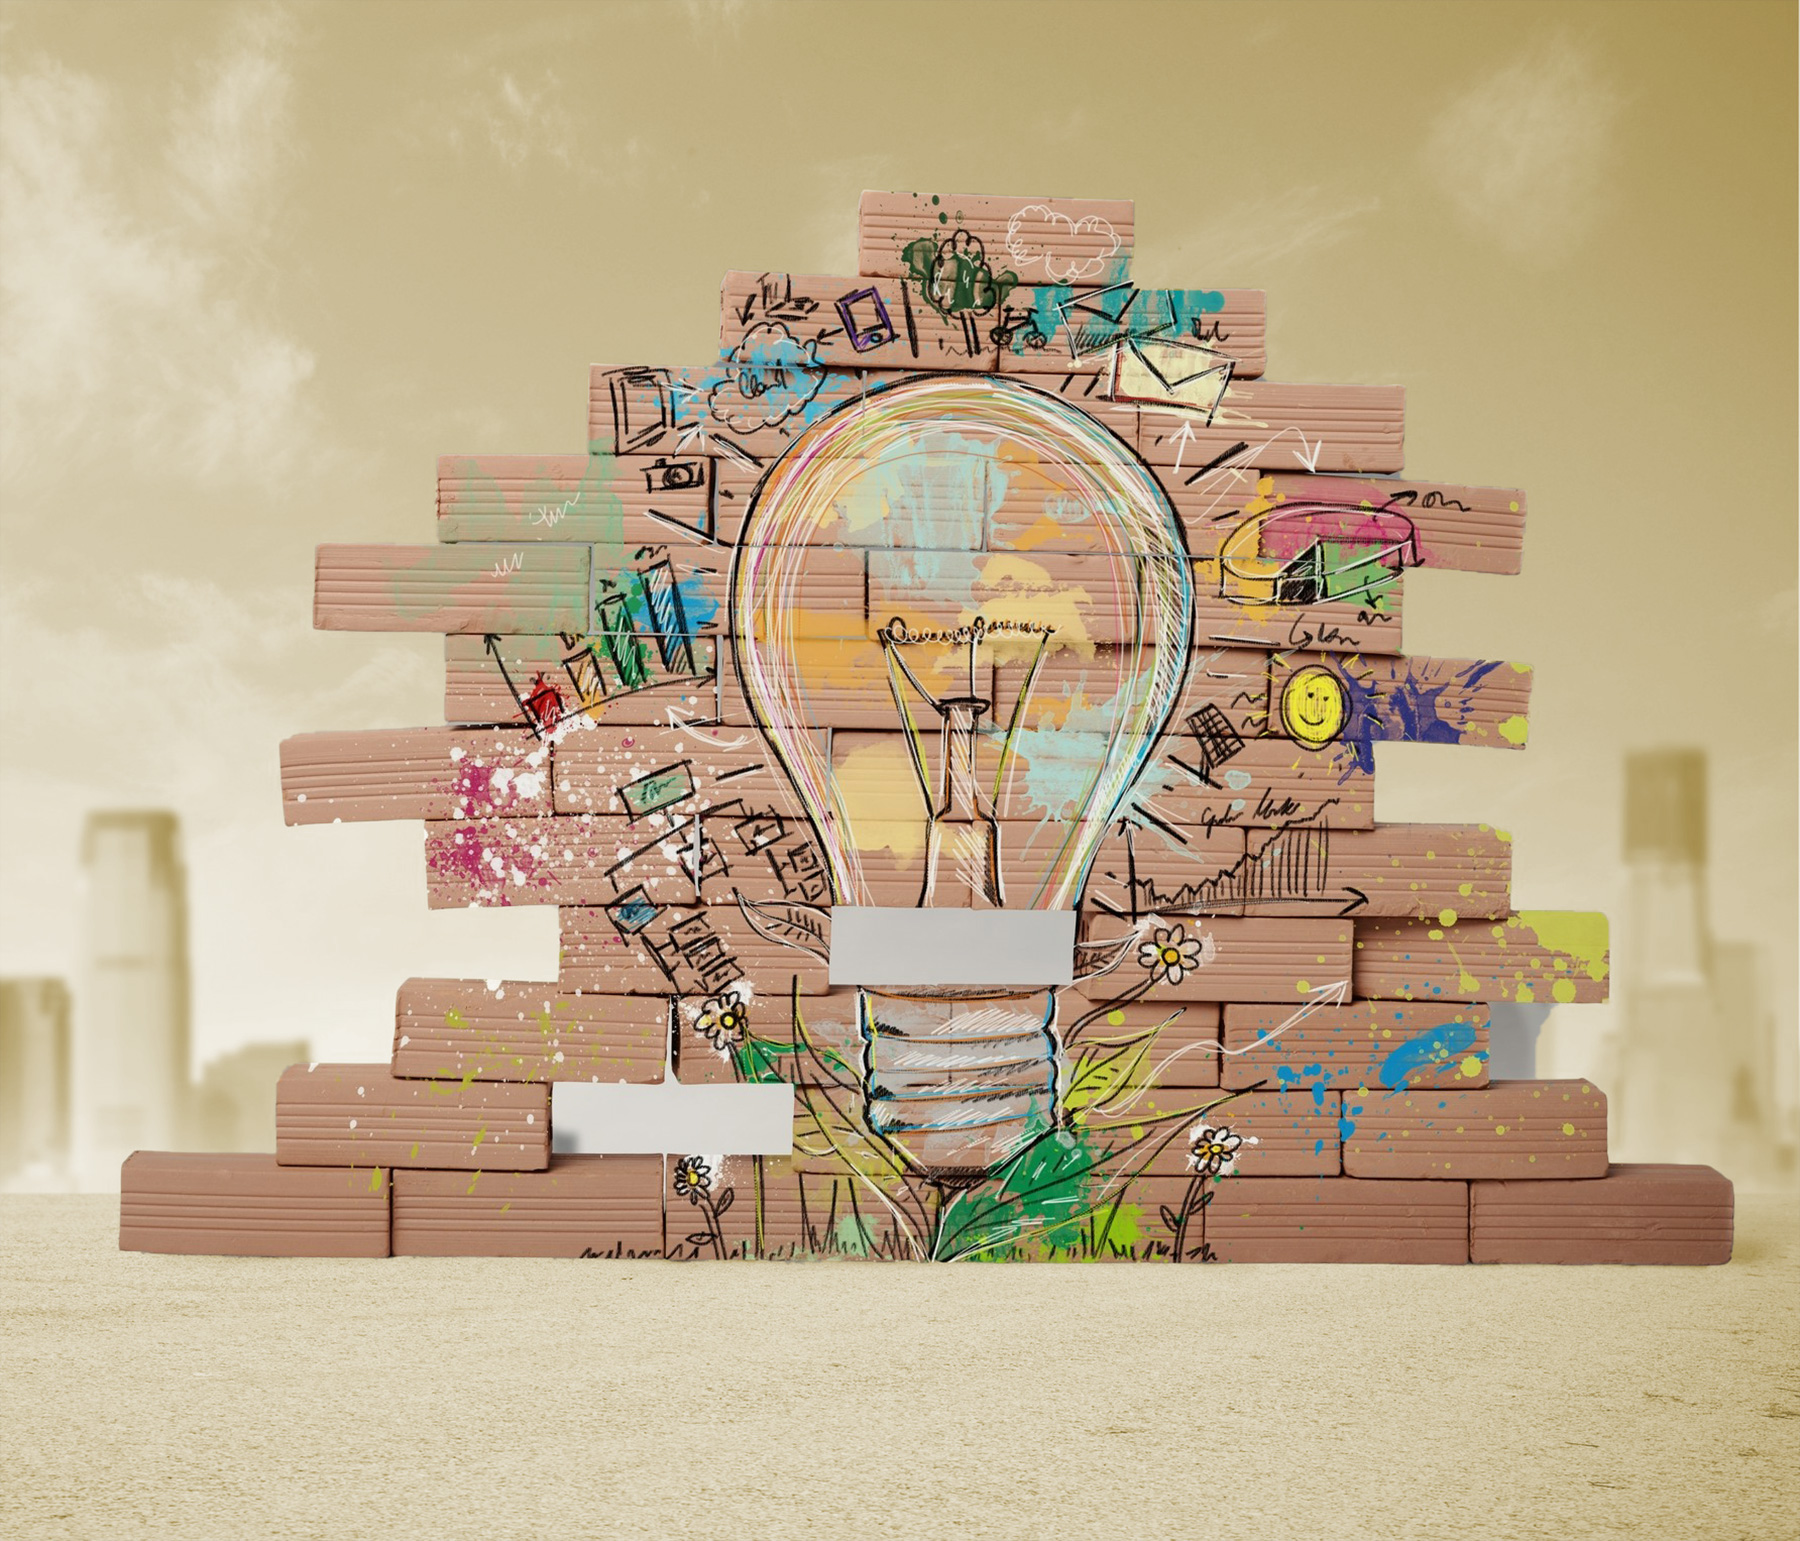 Light Bulb: Change, Risk, Innovation